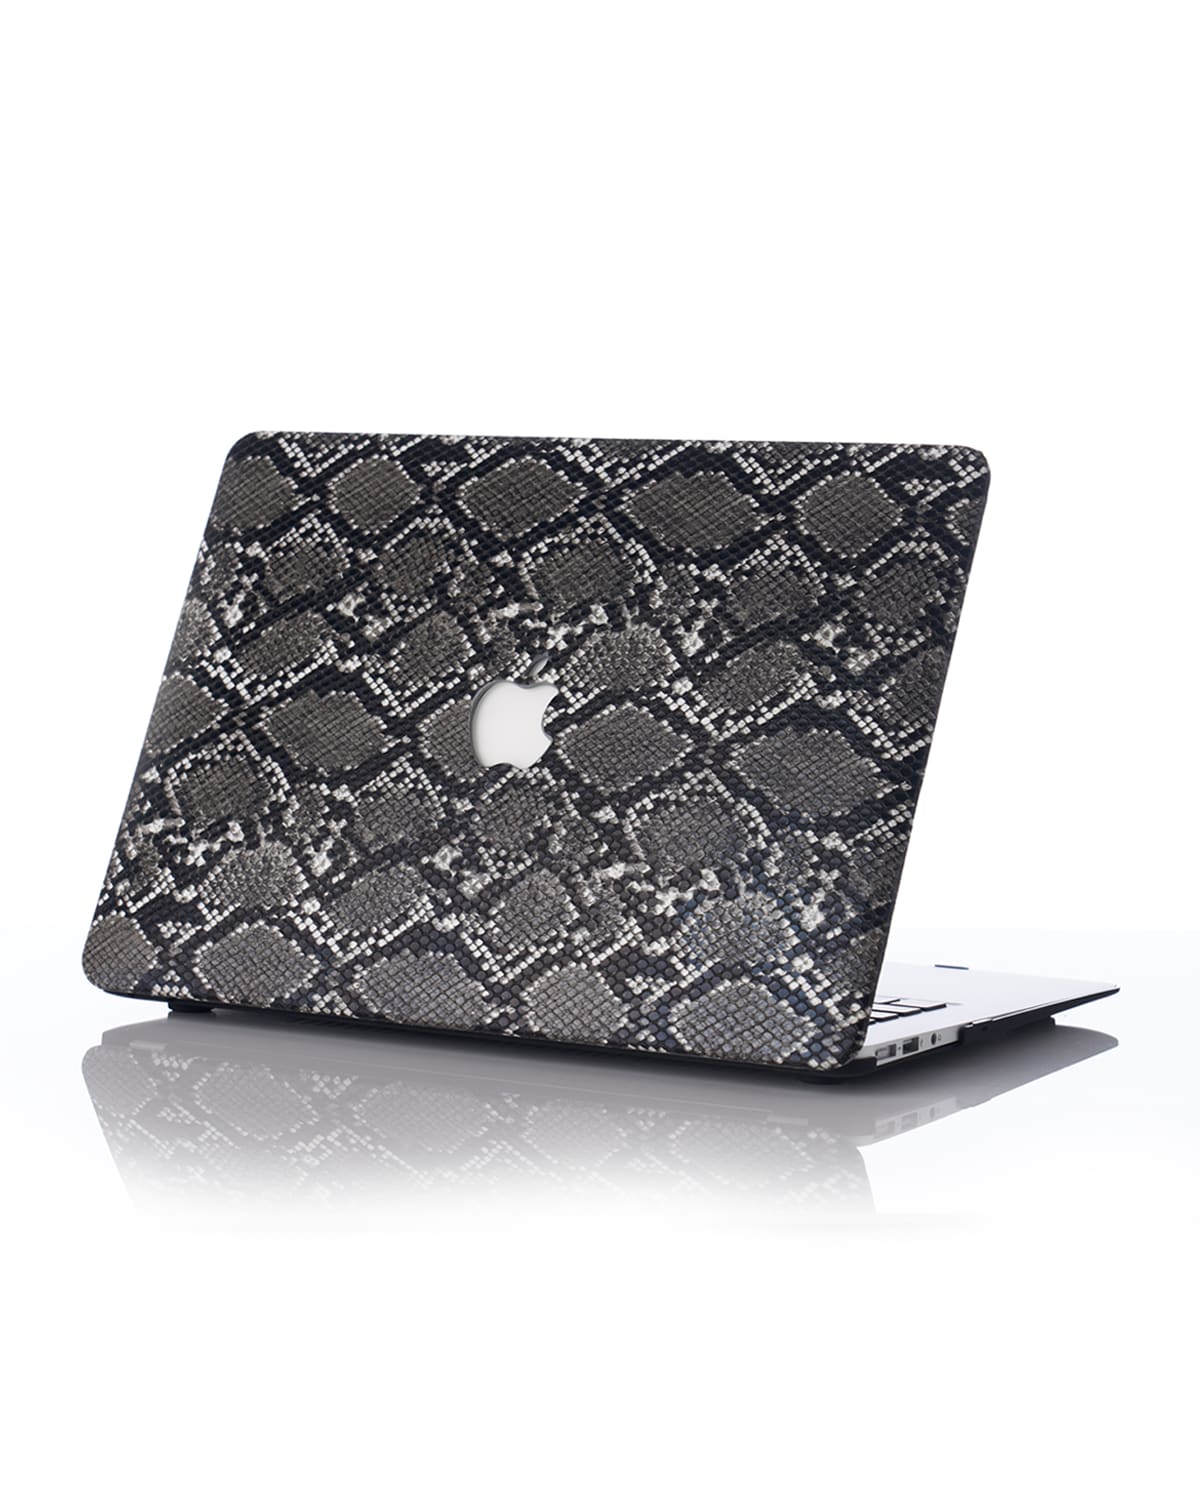 Chic Geeks Animal 13" Macbook Pro With Touchbar Case In Black Snakeskin